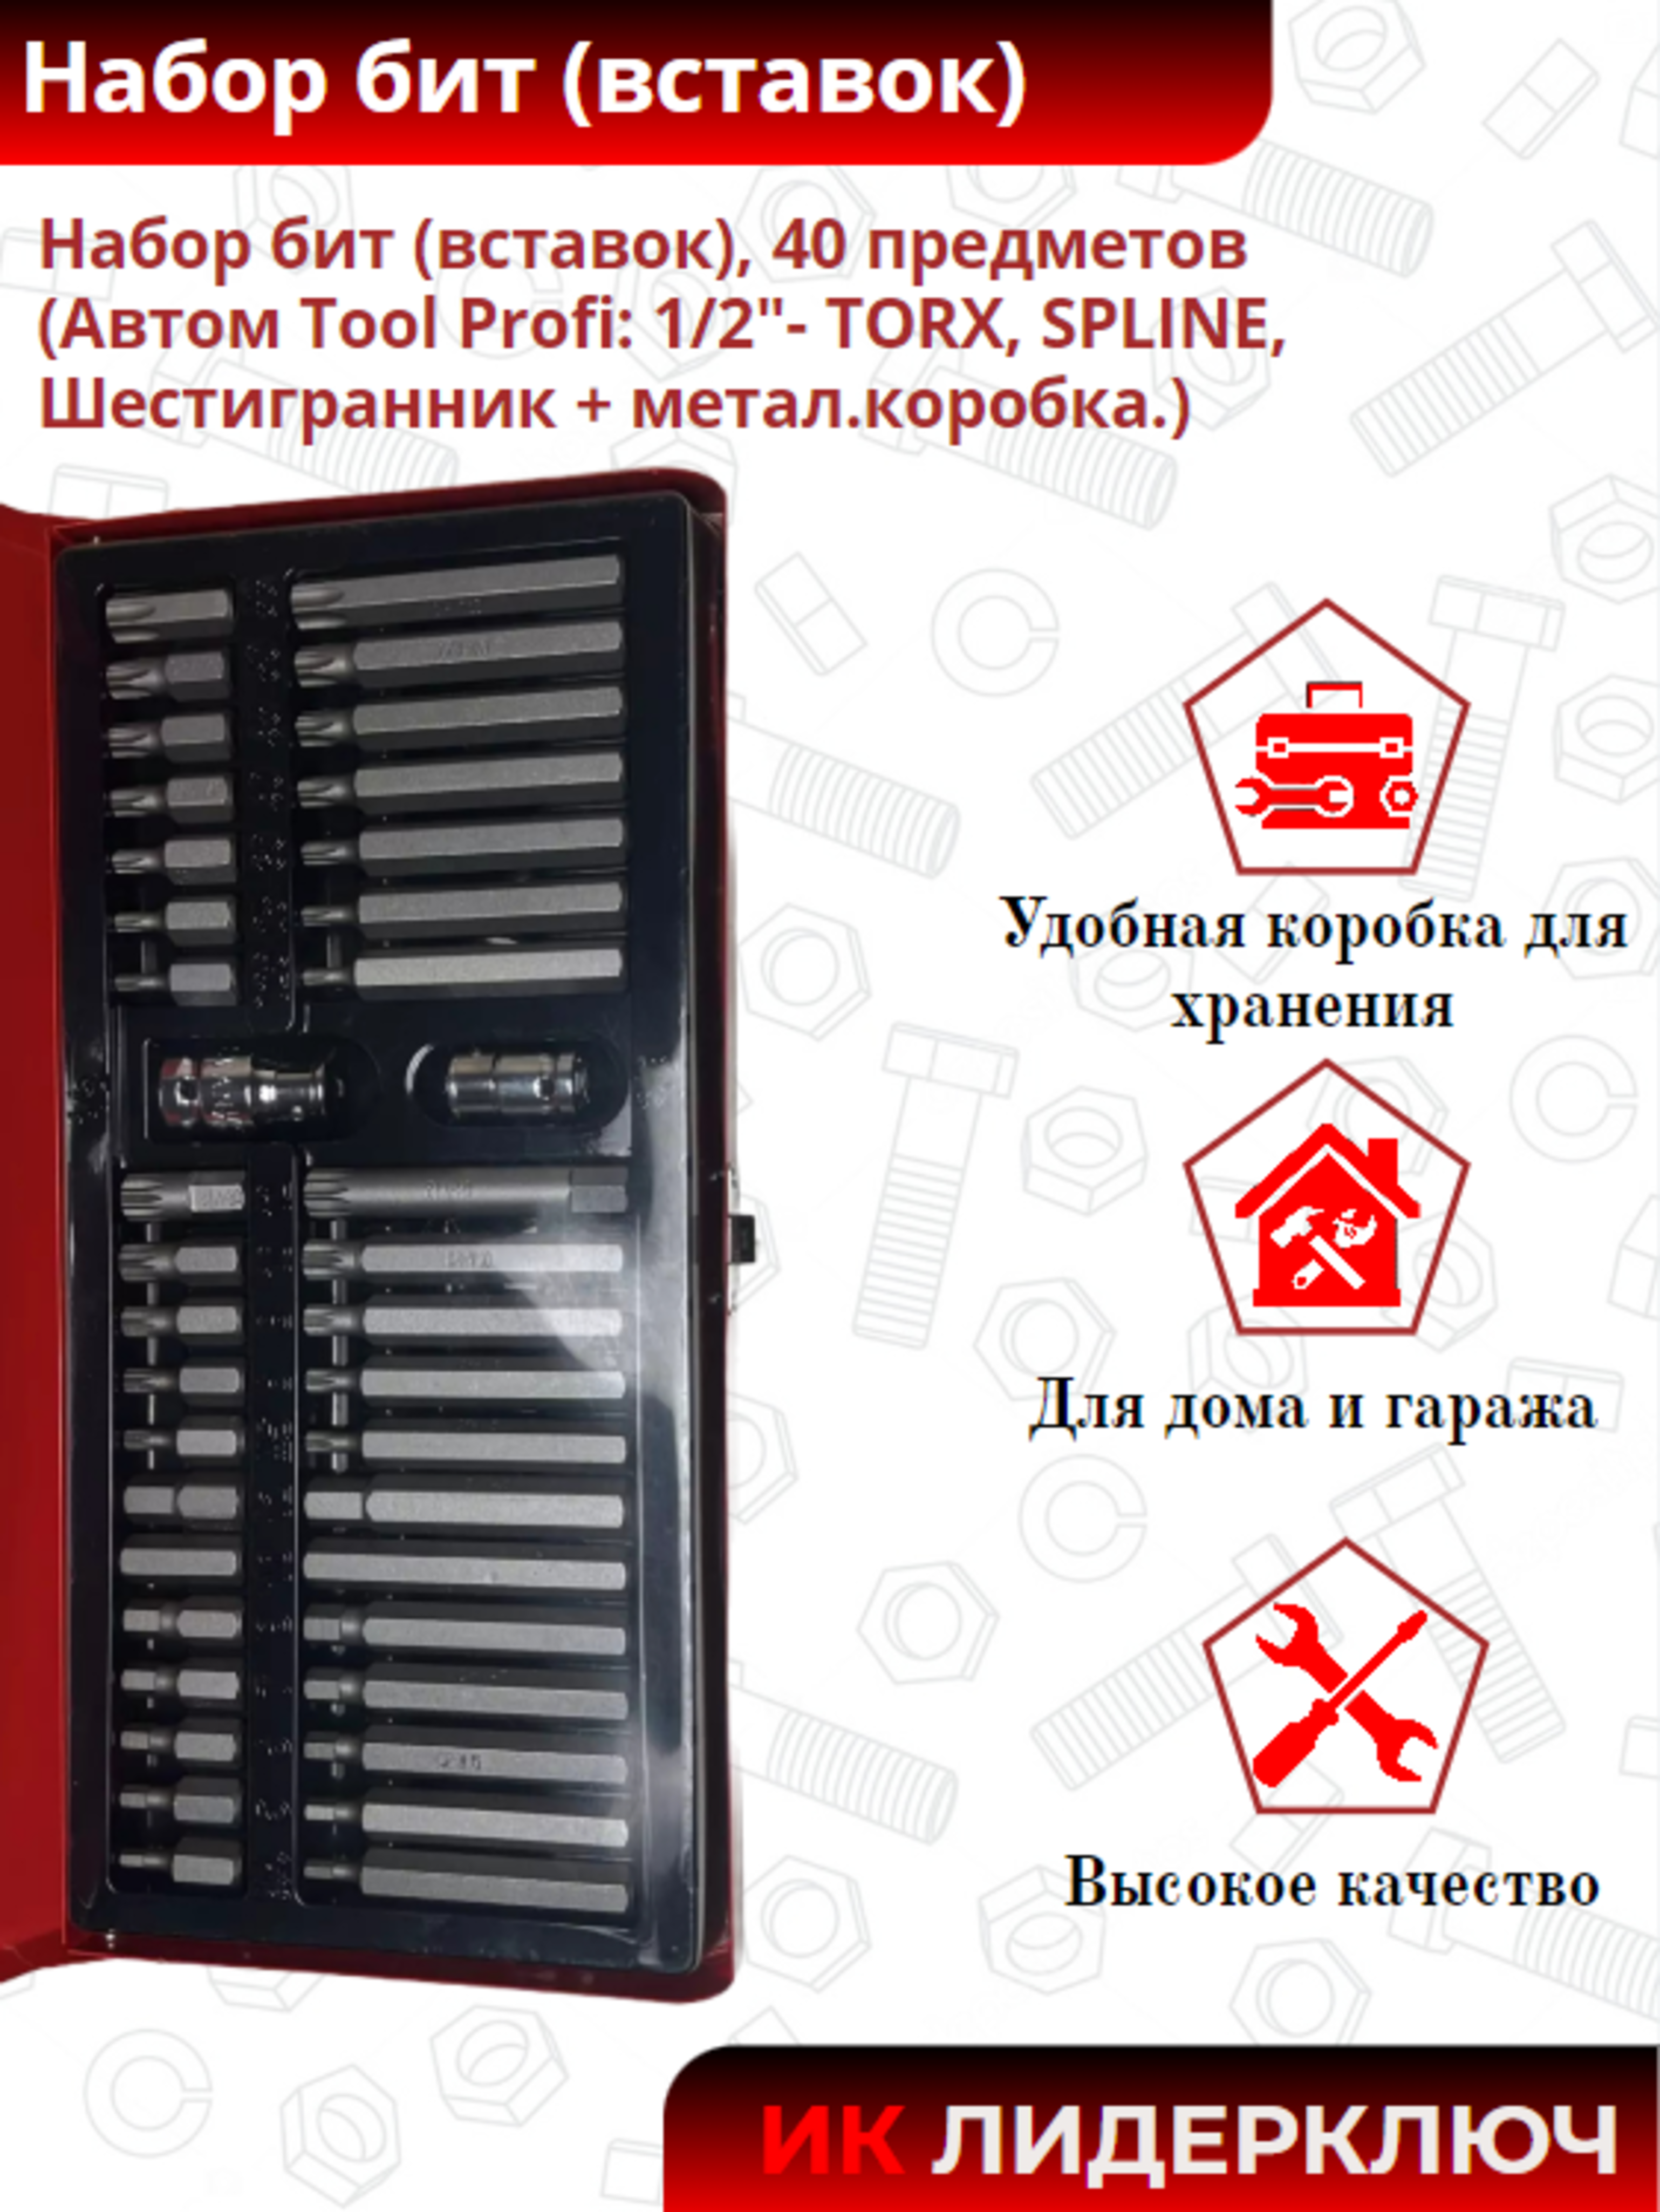 Набор бит (вставок), 40 предметов (Автом Tool Profi: 1/2"- TORX, SPLINE, Шестигранник + метал.коробка.)